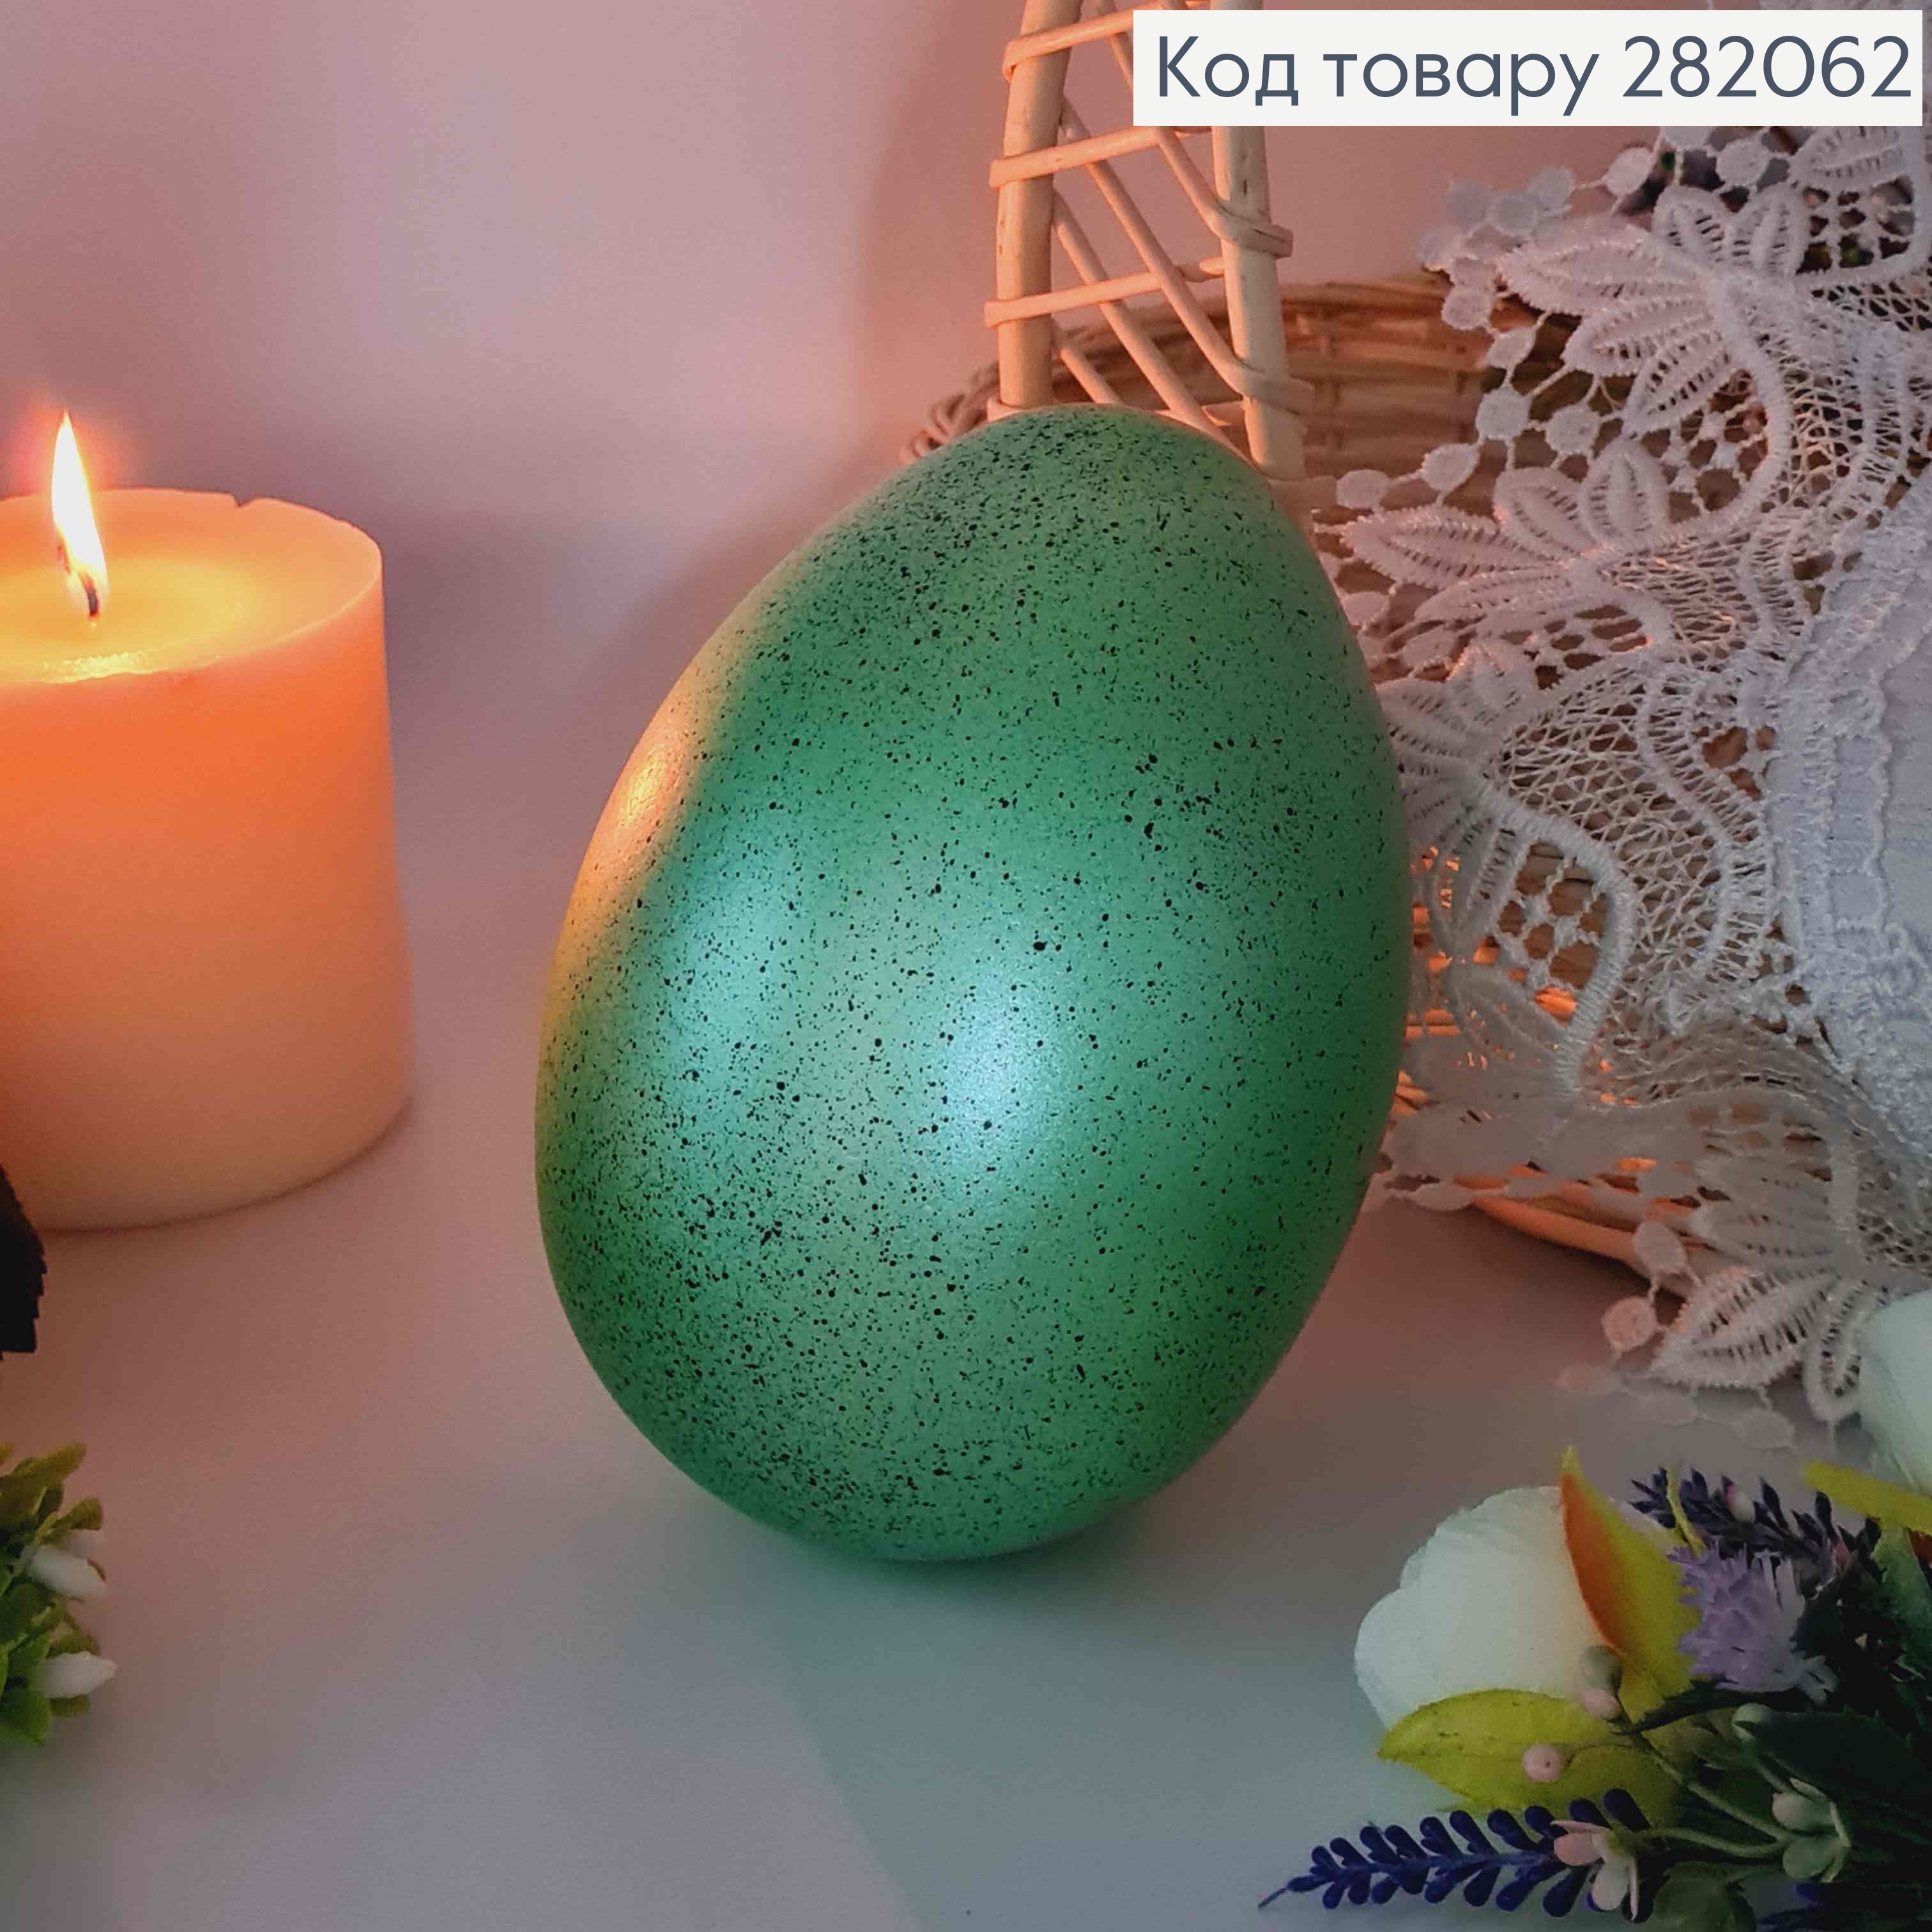 Яйцо страусиное, с черным вкраплением САЛАТОВОГО цвета, 15*10см. 282062 фото 2